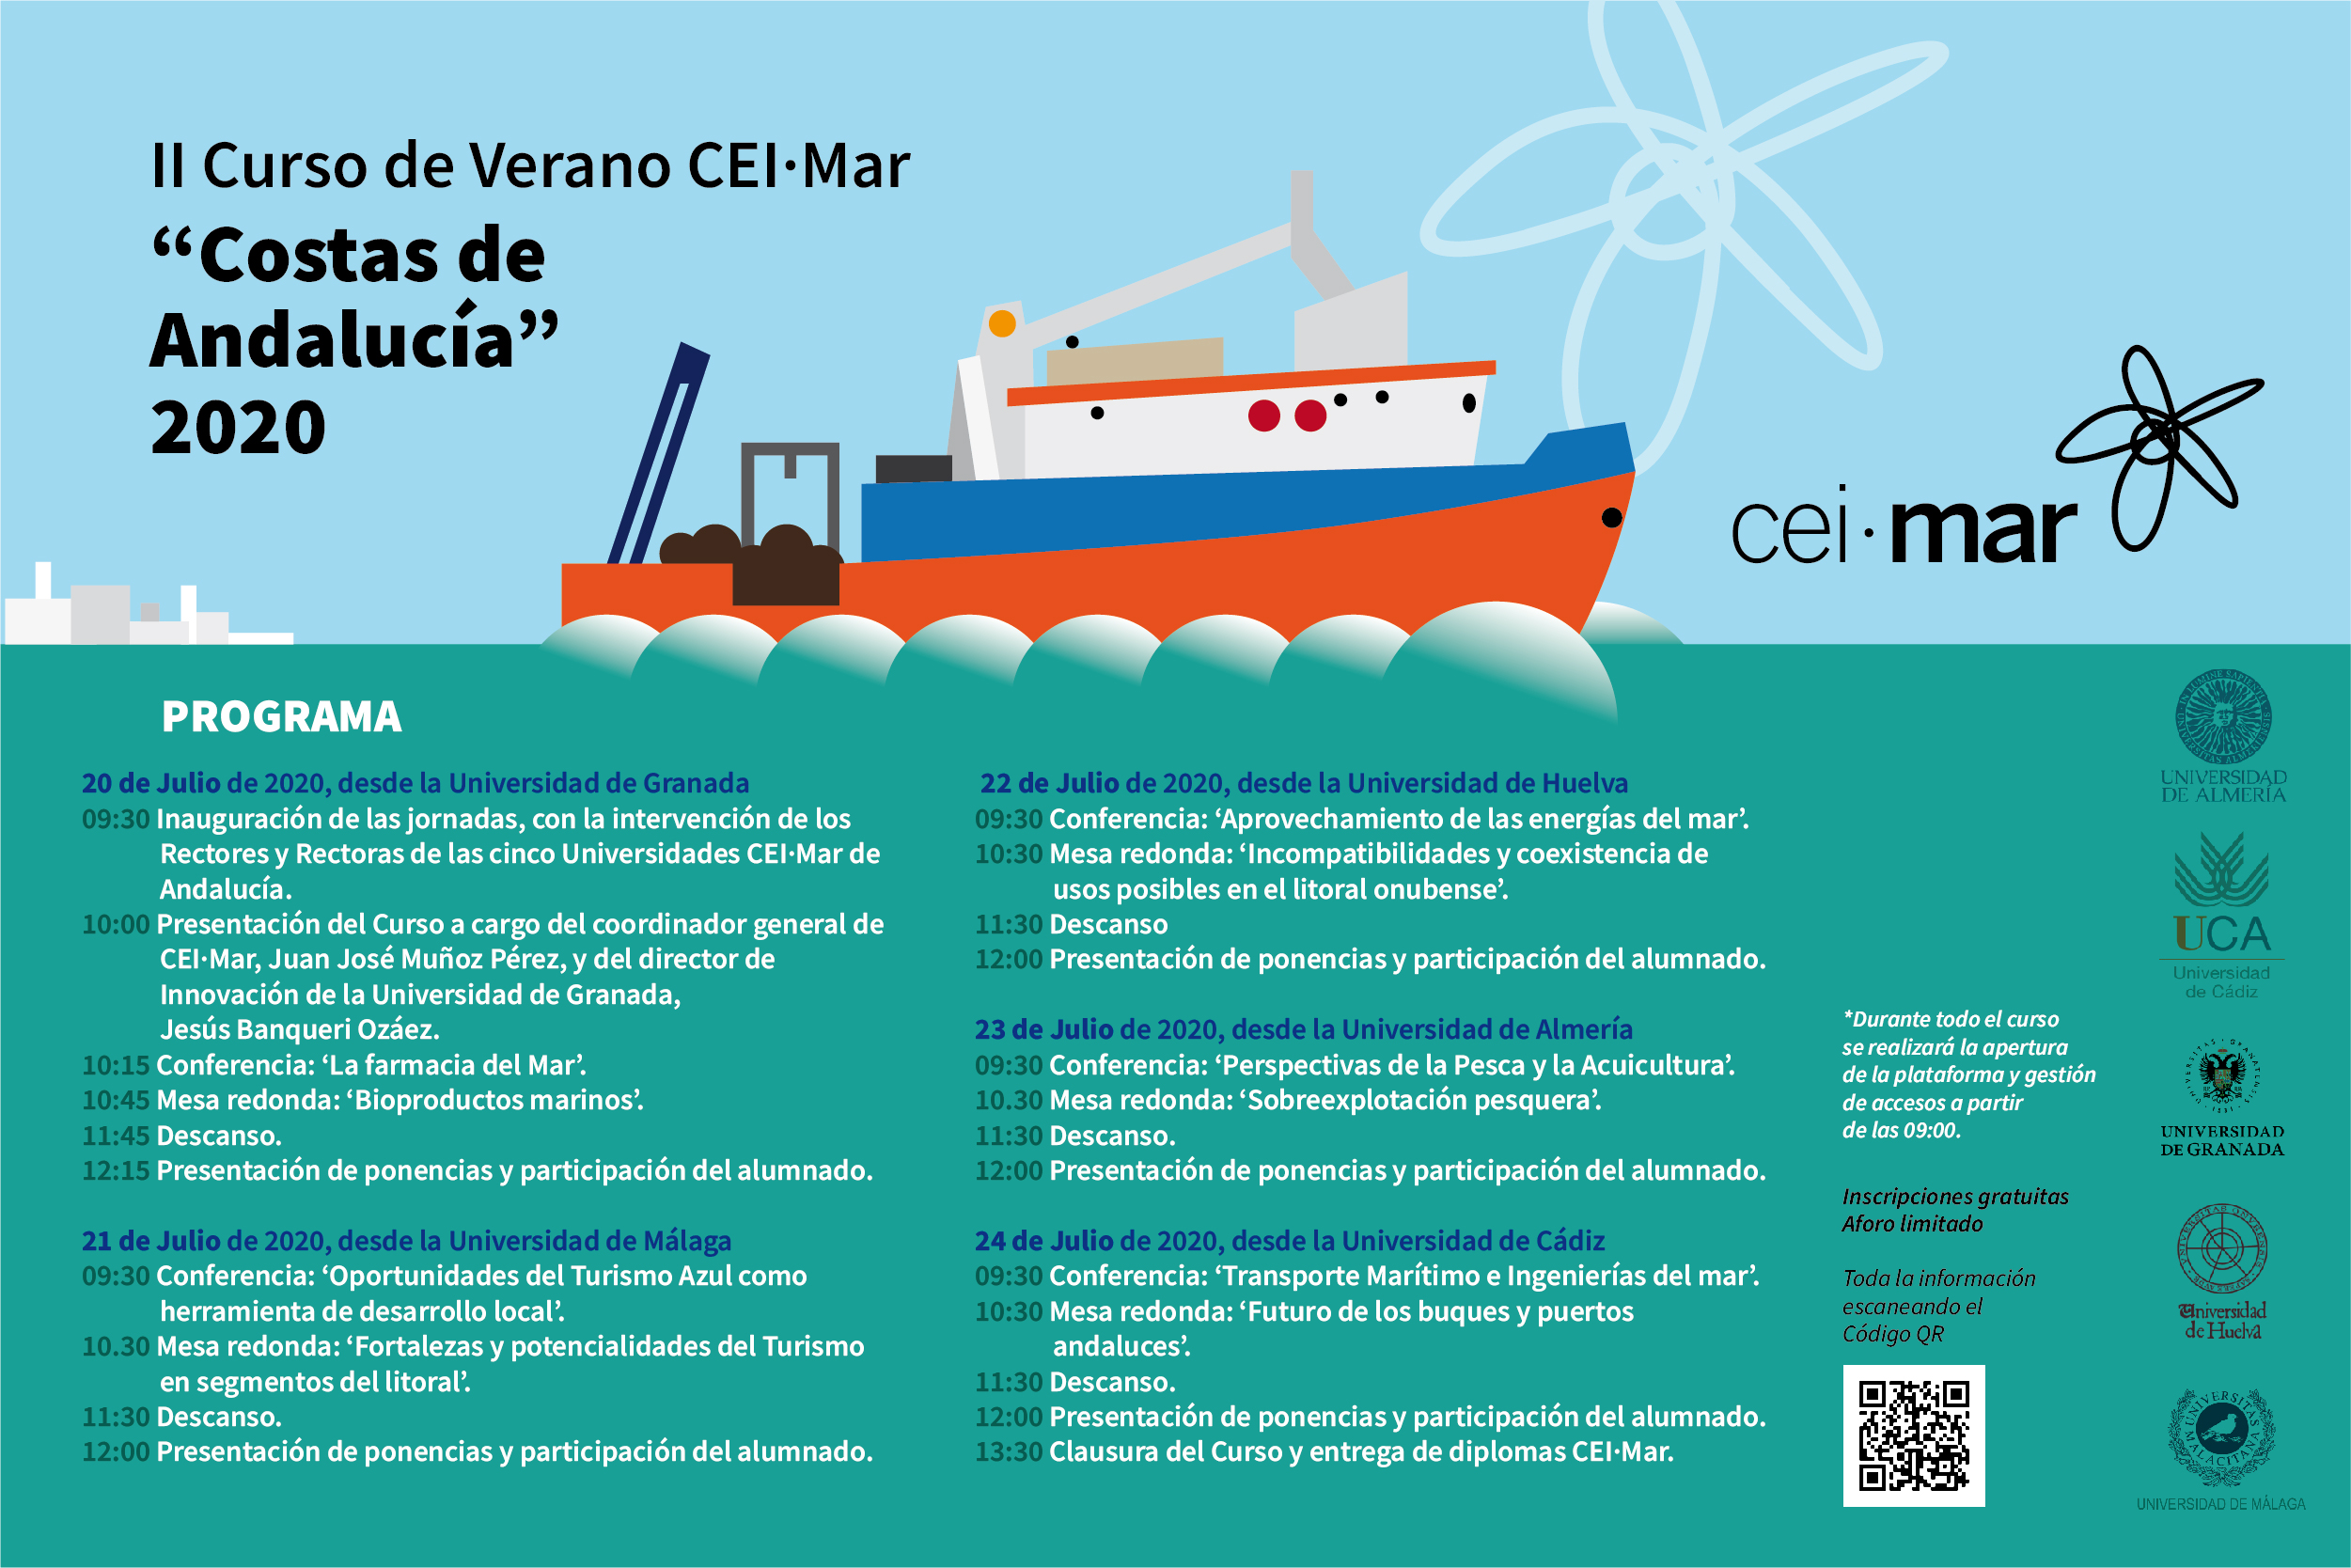 II Curso de Verano CEIMAR 'Costas de Andalucía 2020'